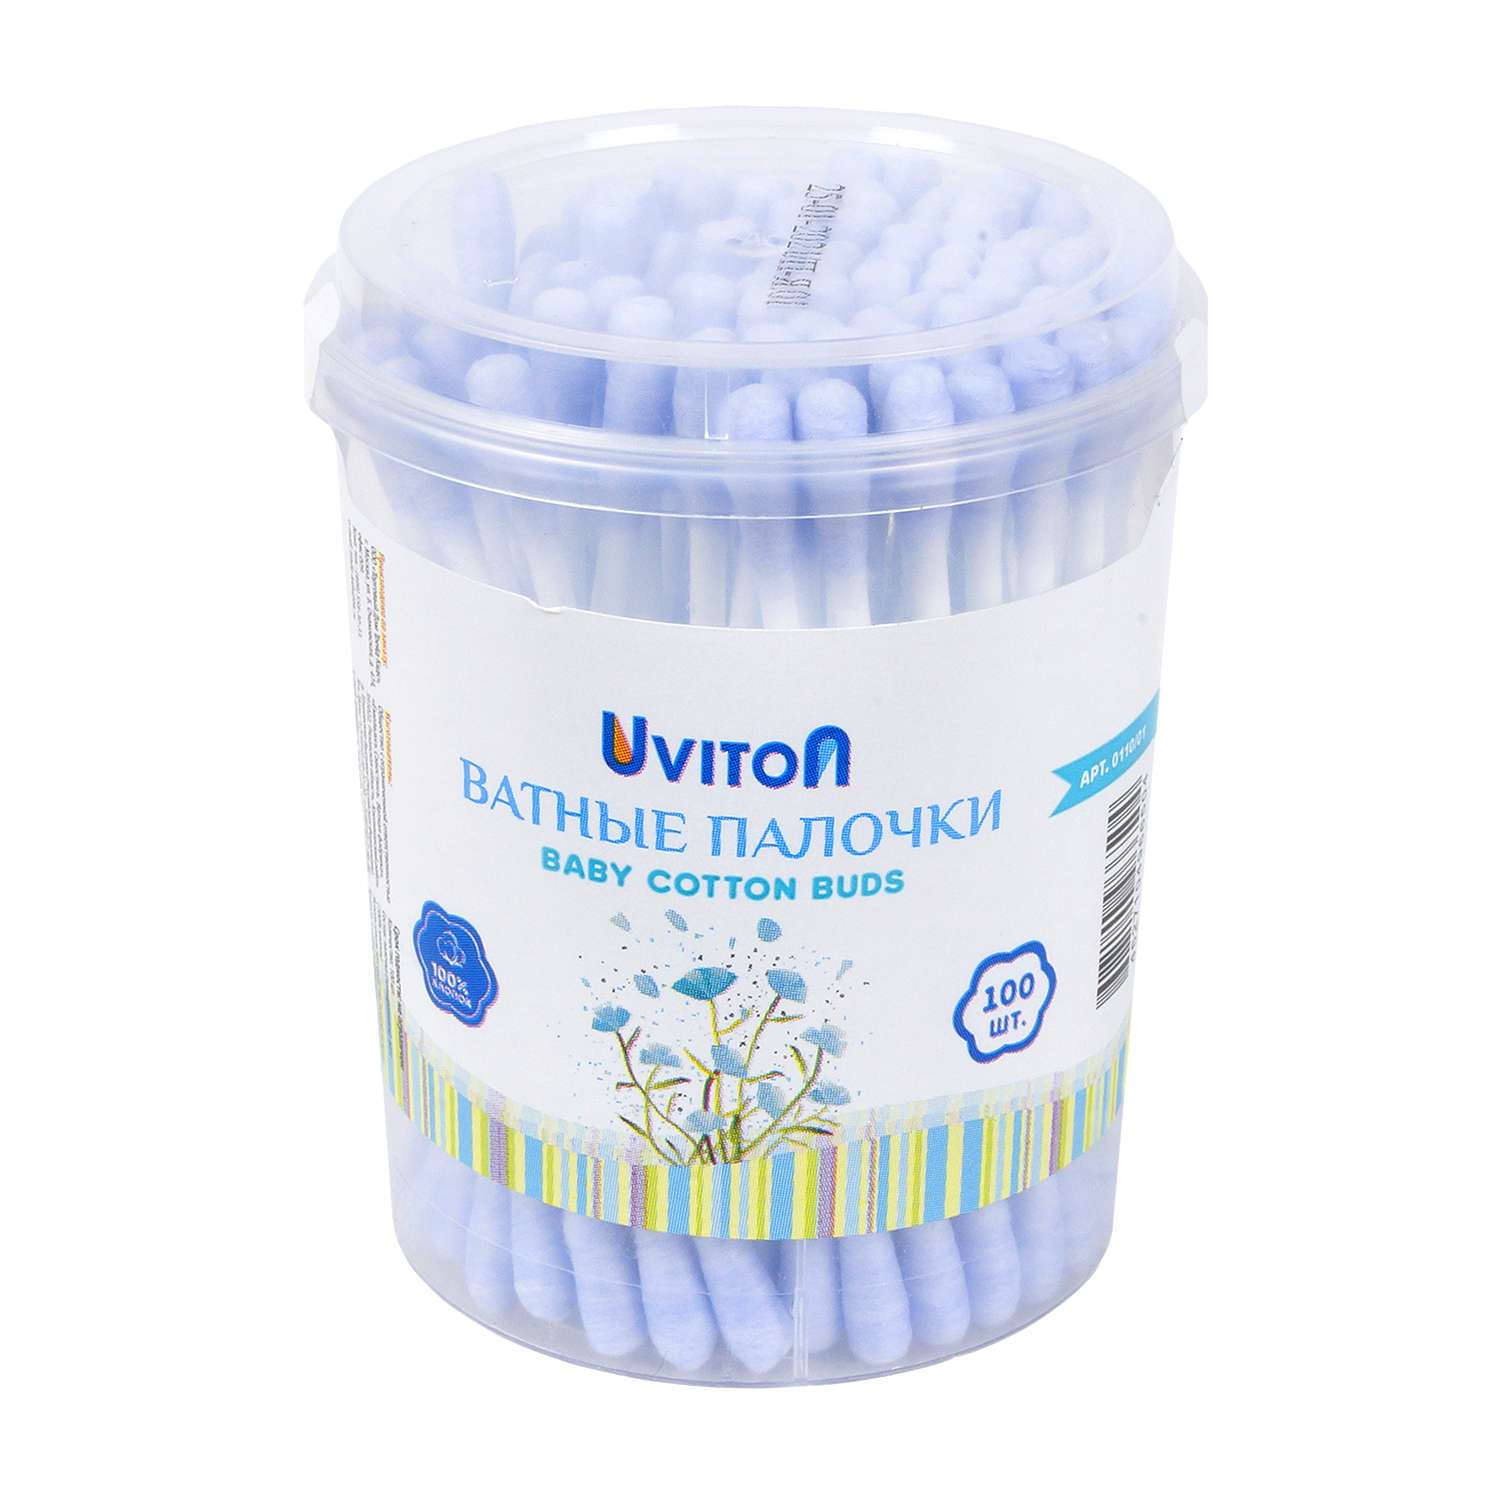 Ватные палочки Uviton для макияжа и для новорожденных 100шт. синие - фото 1